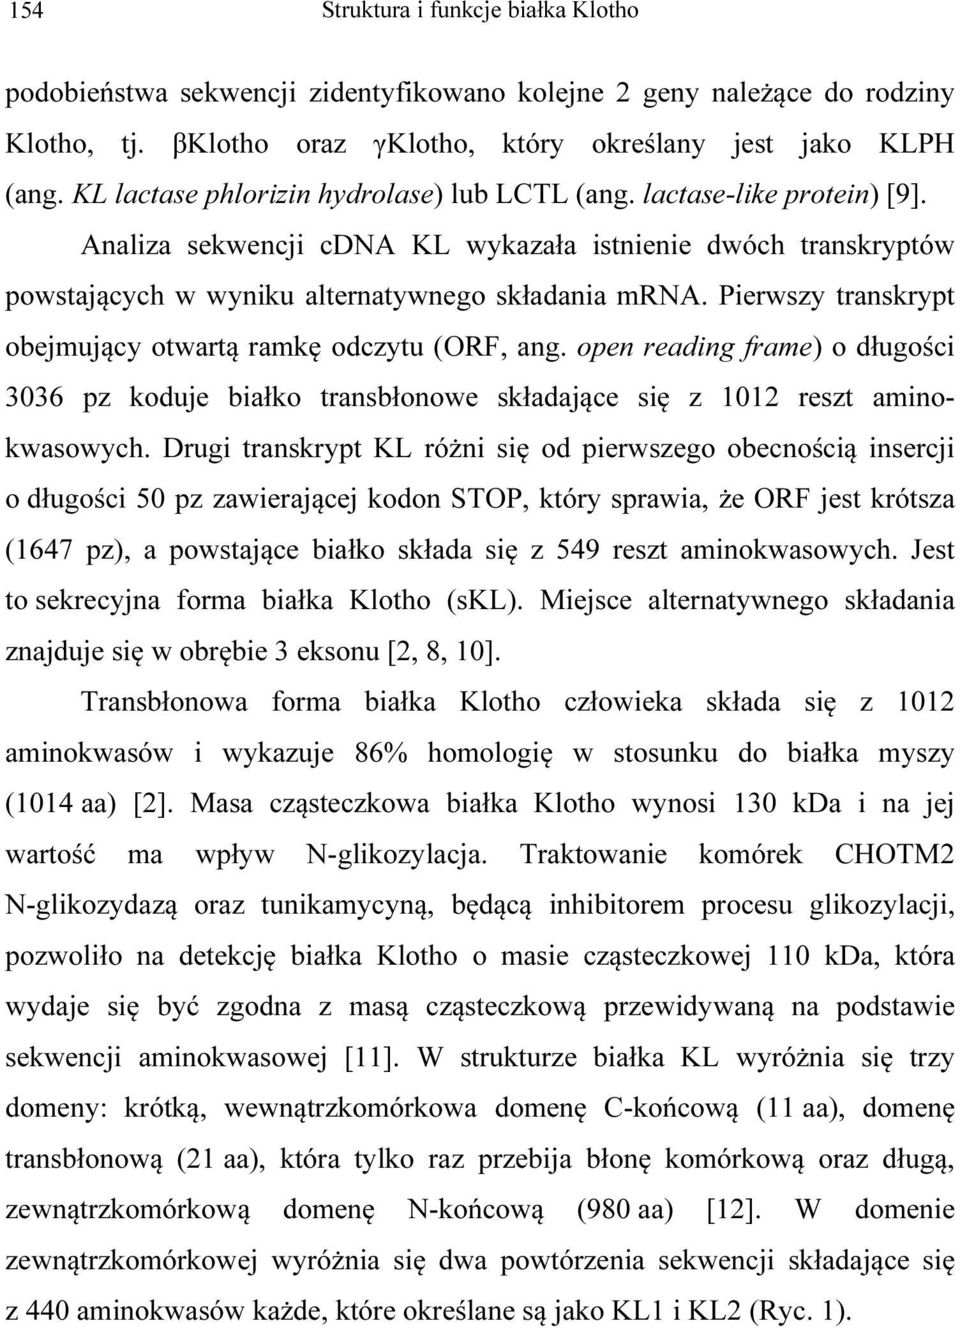 Pierwszy transkrypt obejmujący otwartą ramkę odczytu (ORF, ang. open reading frame) o długości 3036 pz koduje białko transbłonowe składające się z 1012 reszt aminokwasowych.